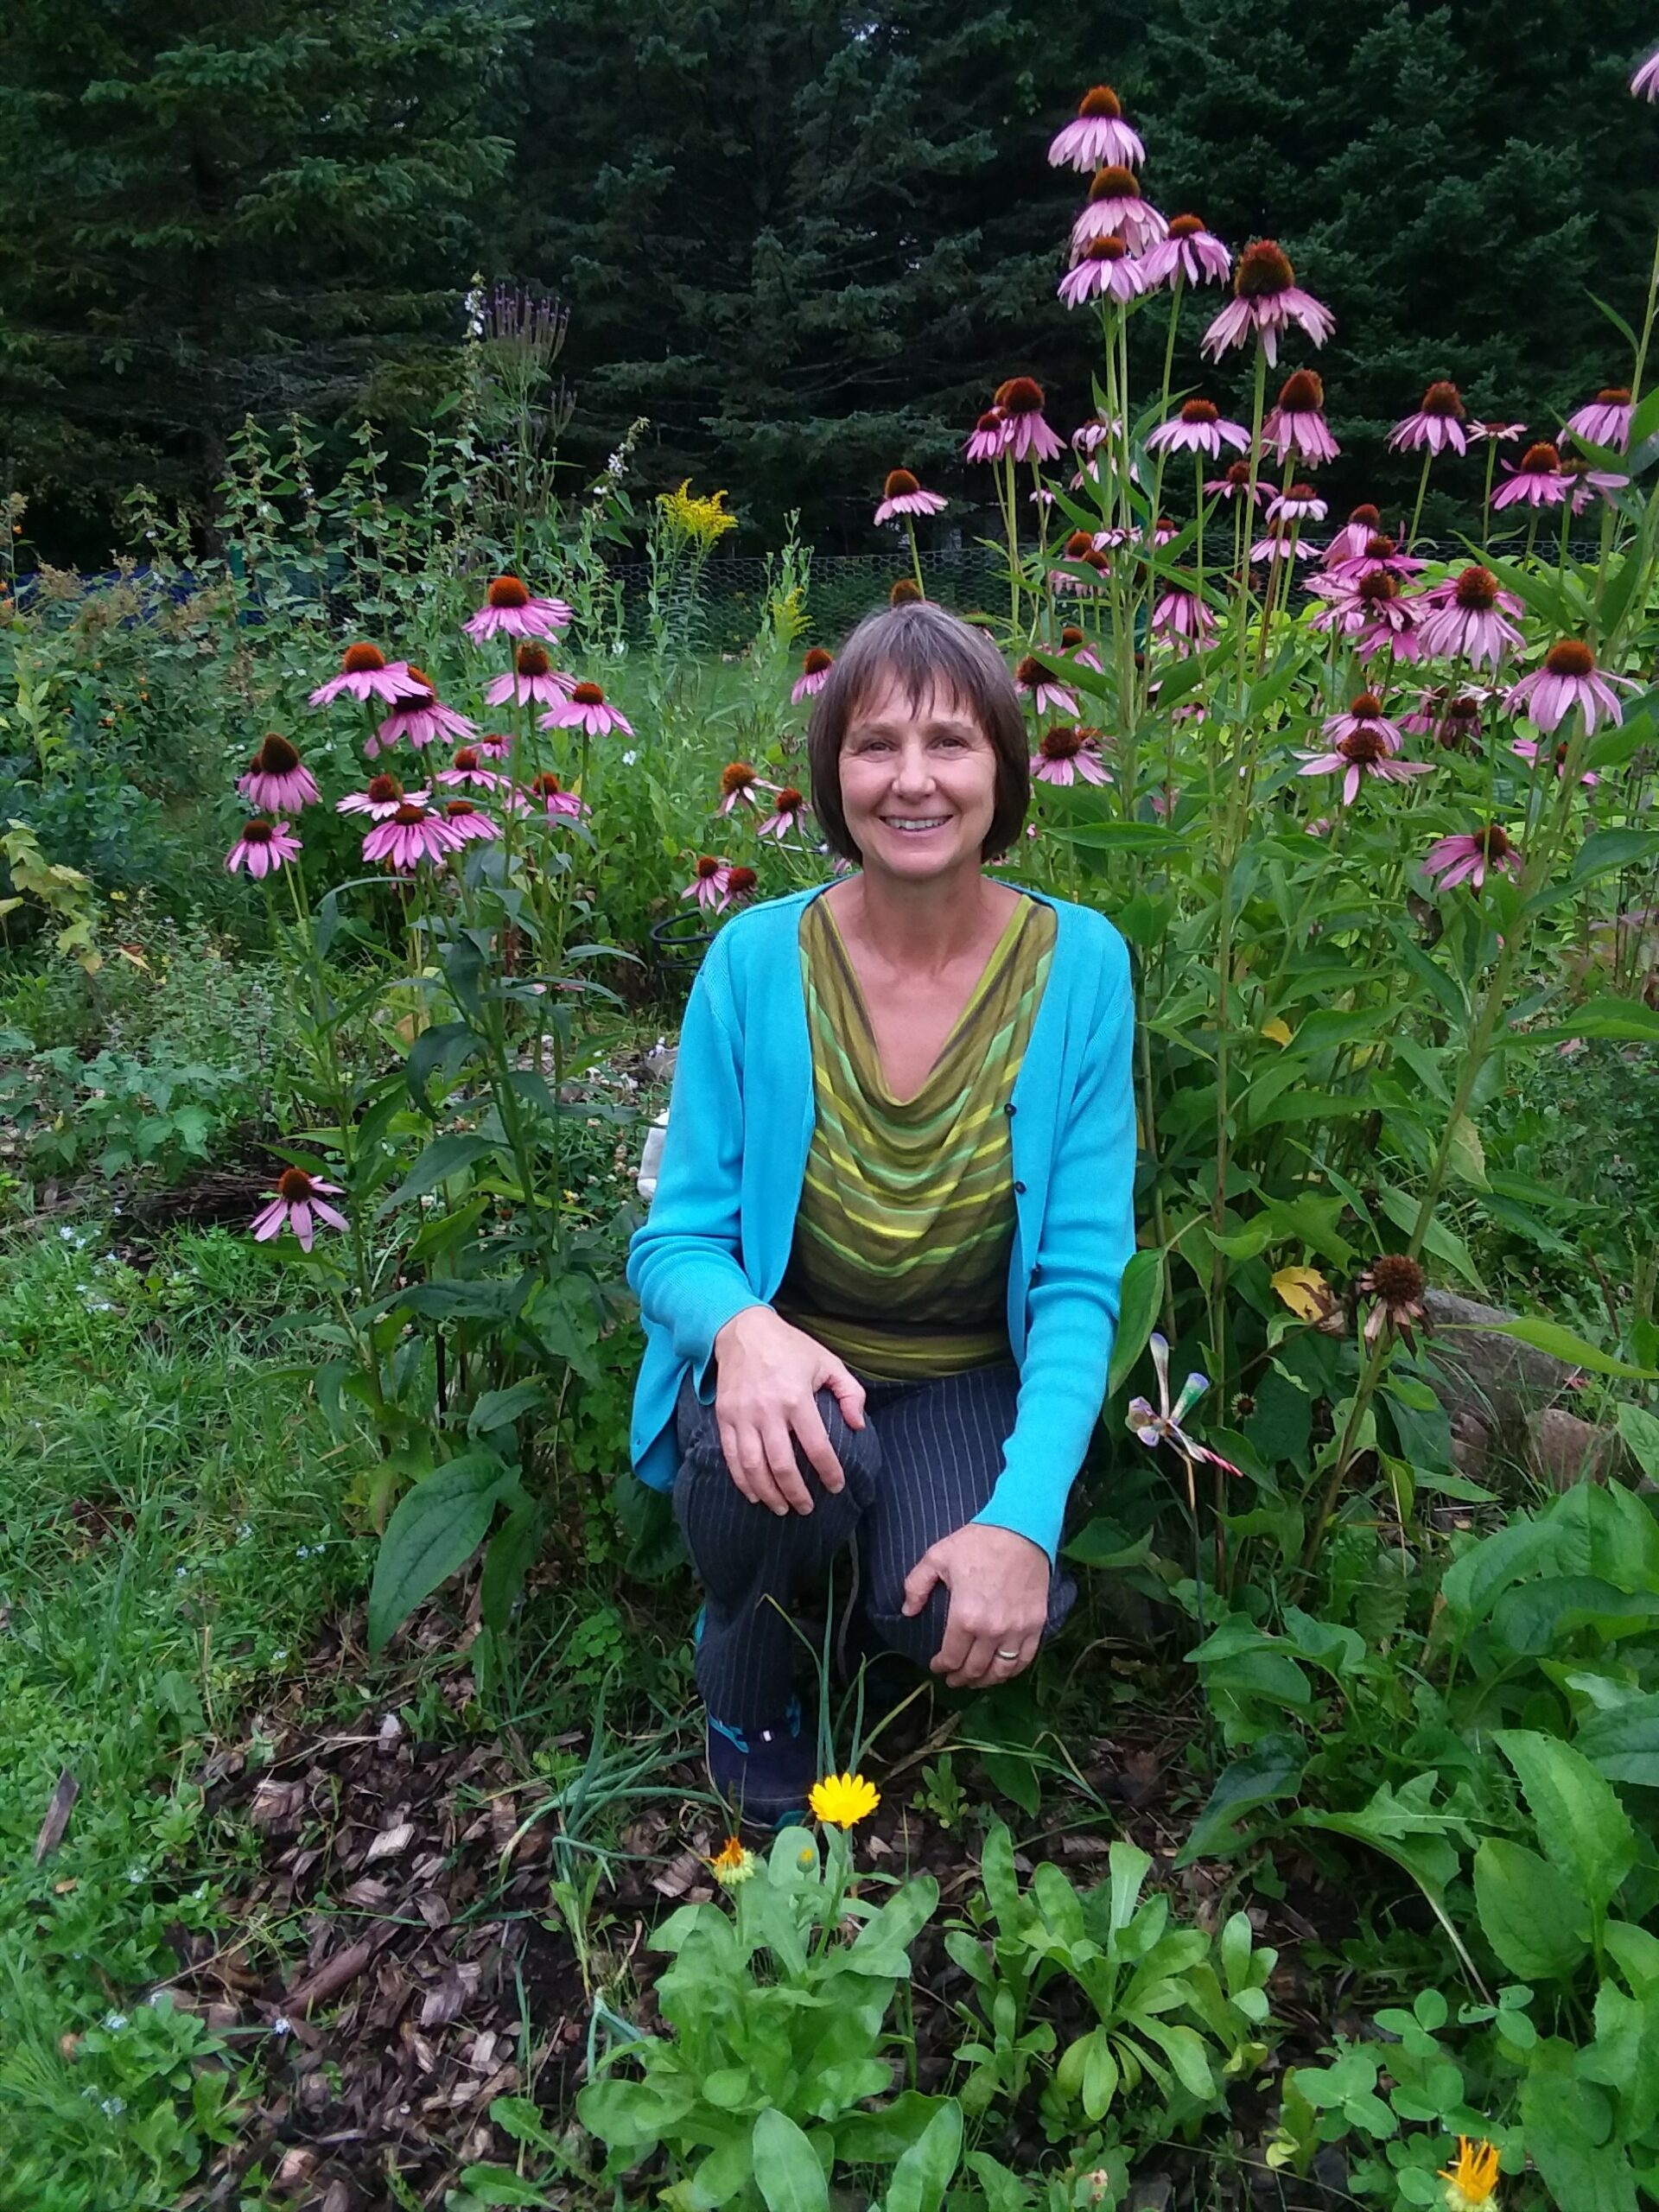 A woman sitting in a flower field